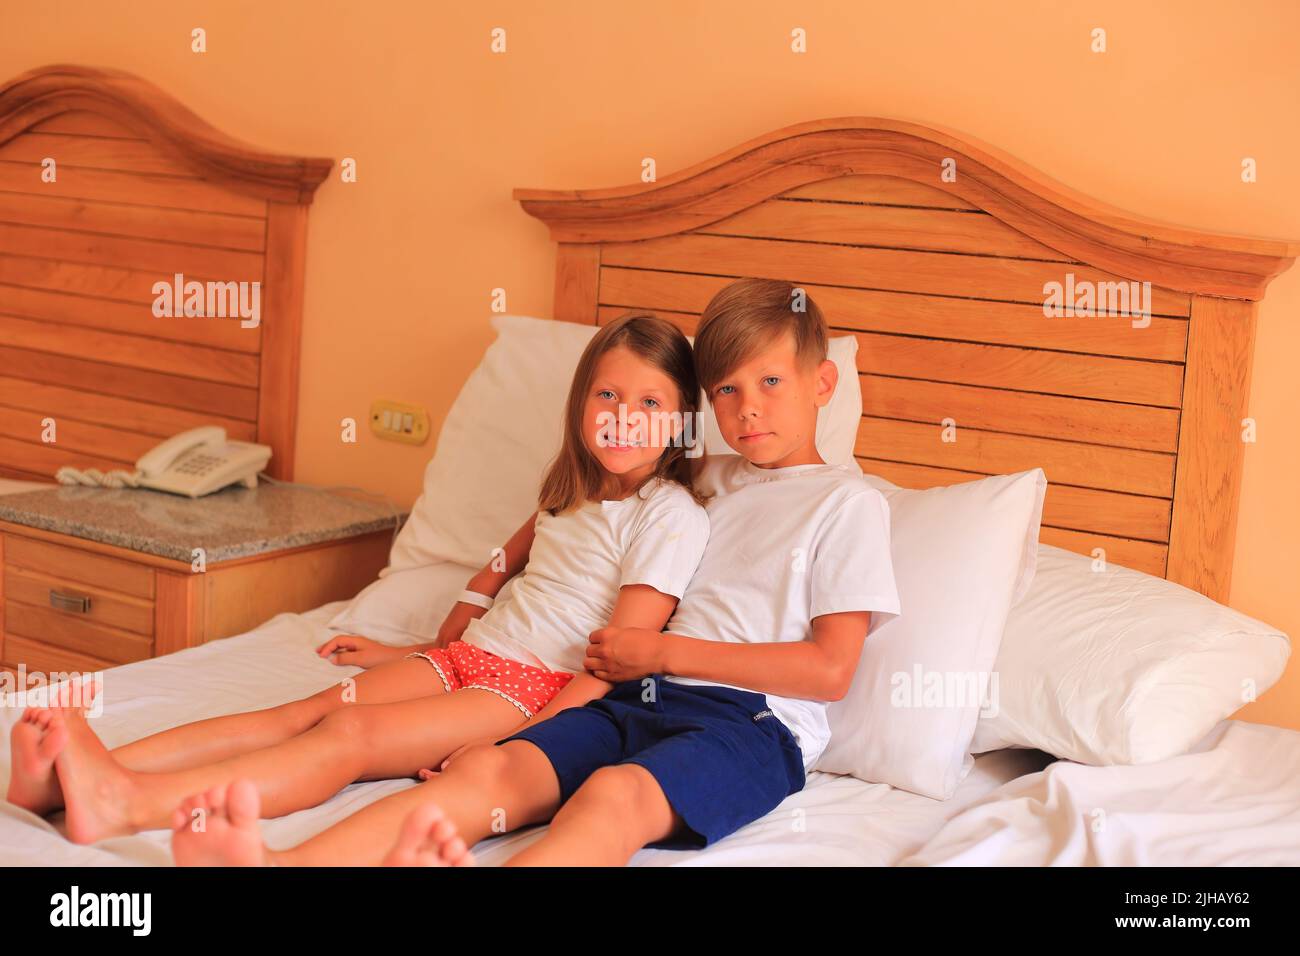 En vacances, deux enfants s'étendent sur un lit avec des draps blancs dans une chambre d'hôtel. Les enfants jouent sur le lit avec des draps blancs à la maison. Garçon et fille avant d'aller au lit à la maison Banque D'Images